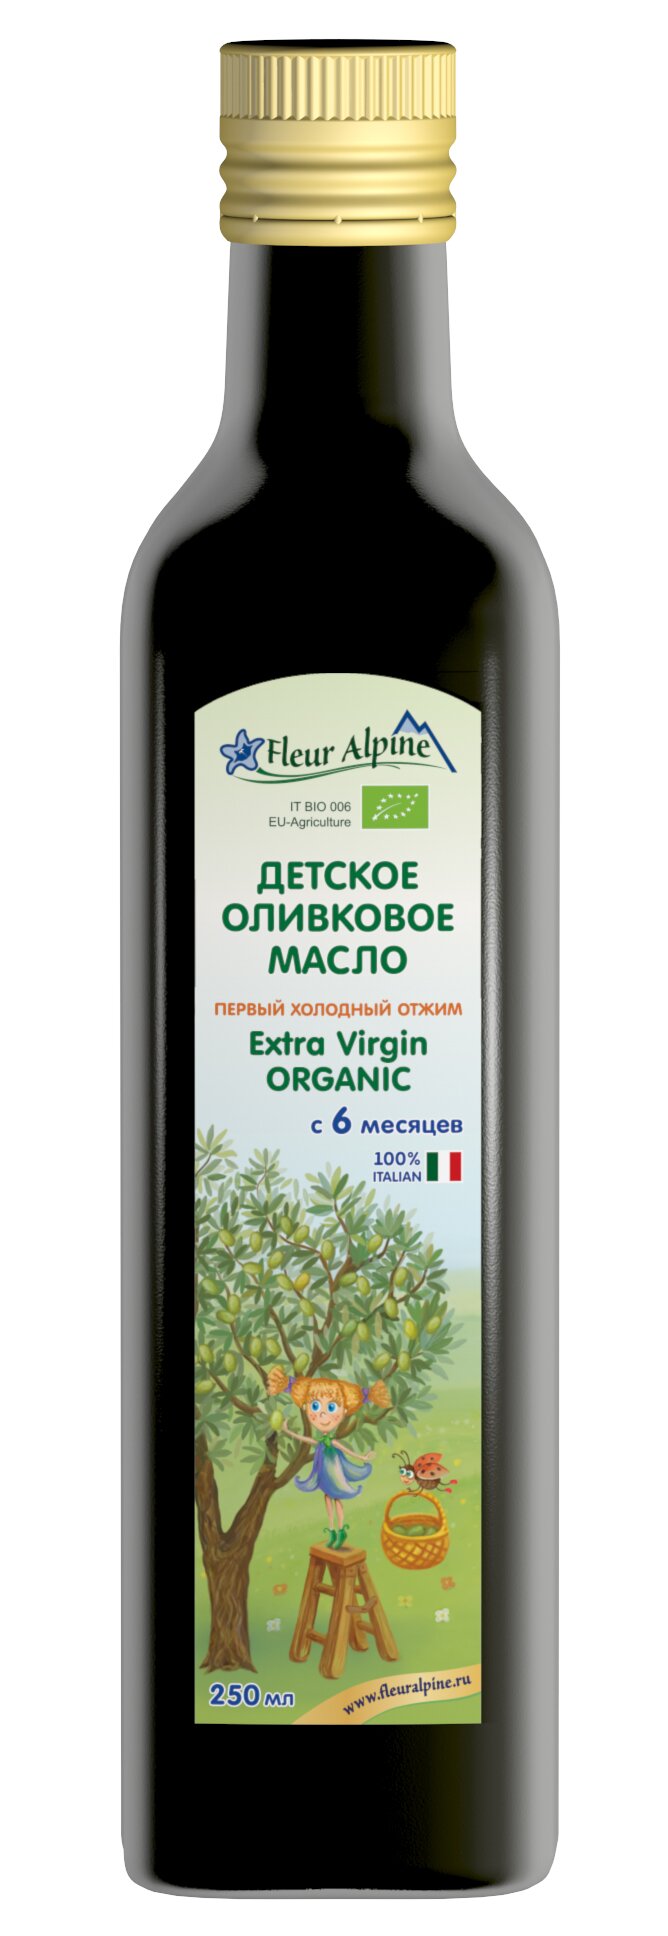 Детское оливковое масло Extra Virgin ORGANIC первого холодного отжима